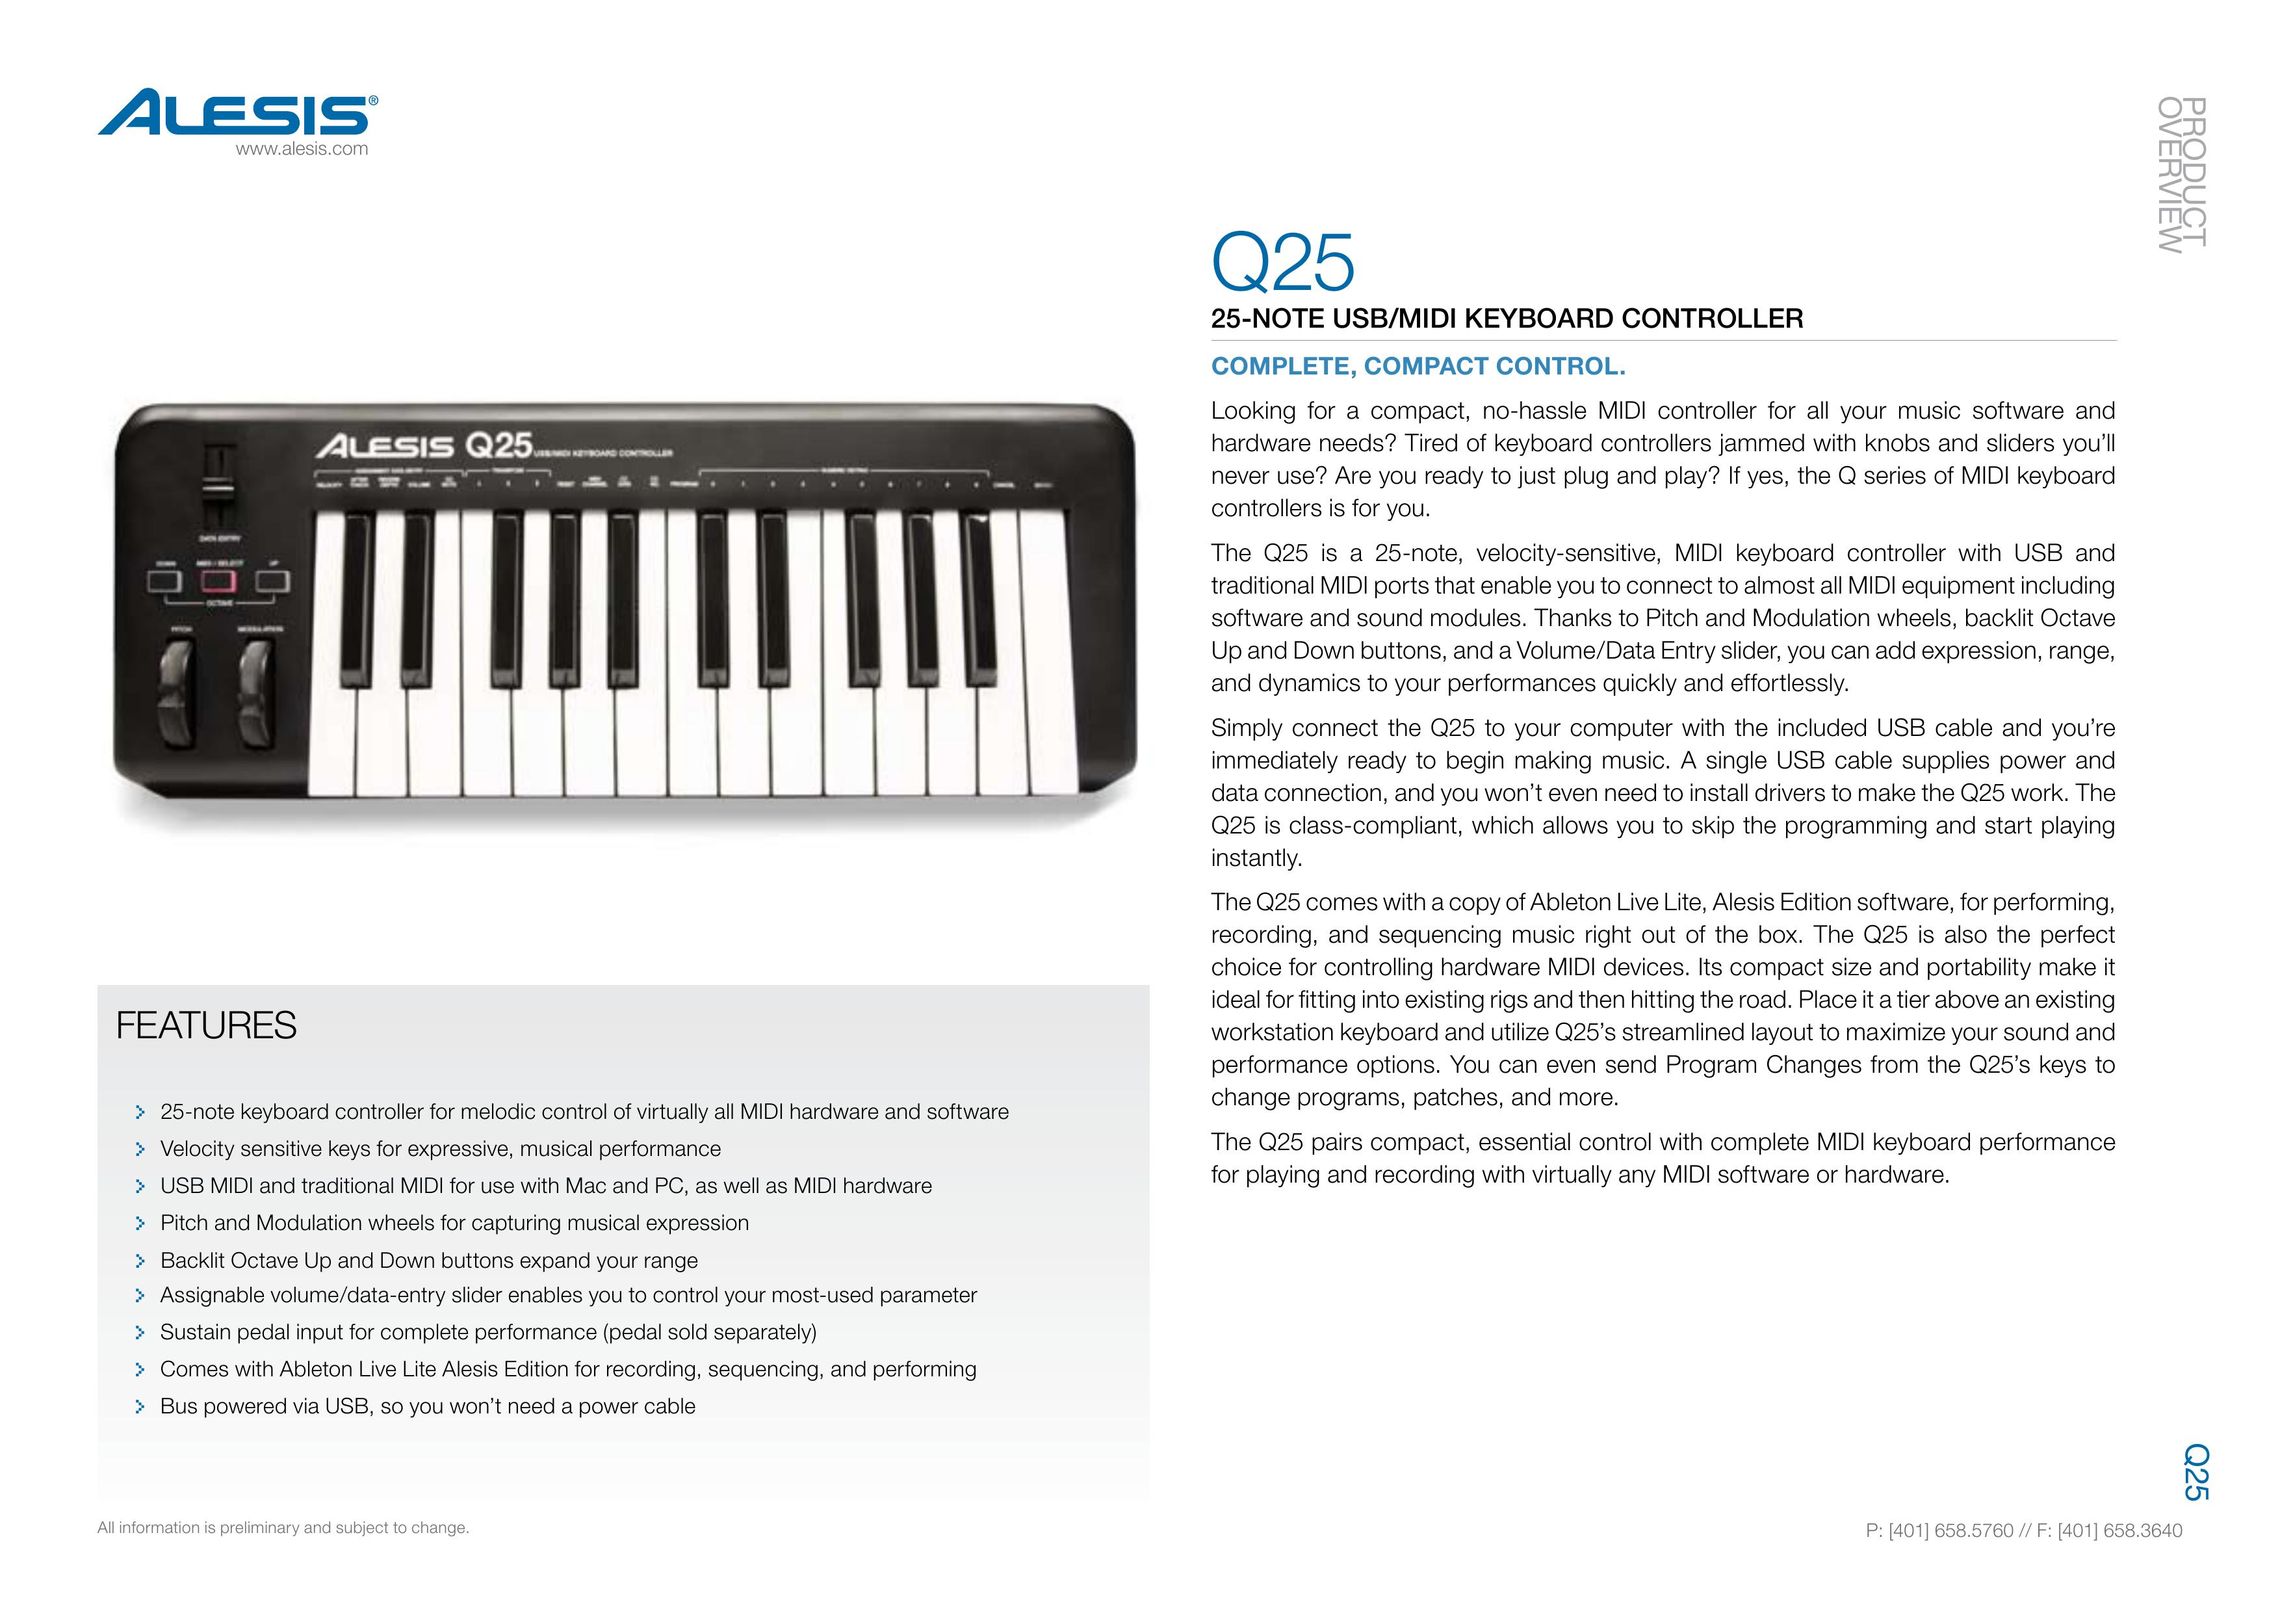 Alesis Q25 Video Game Keyboard User Manual